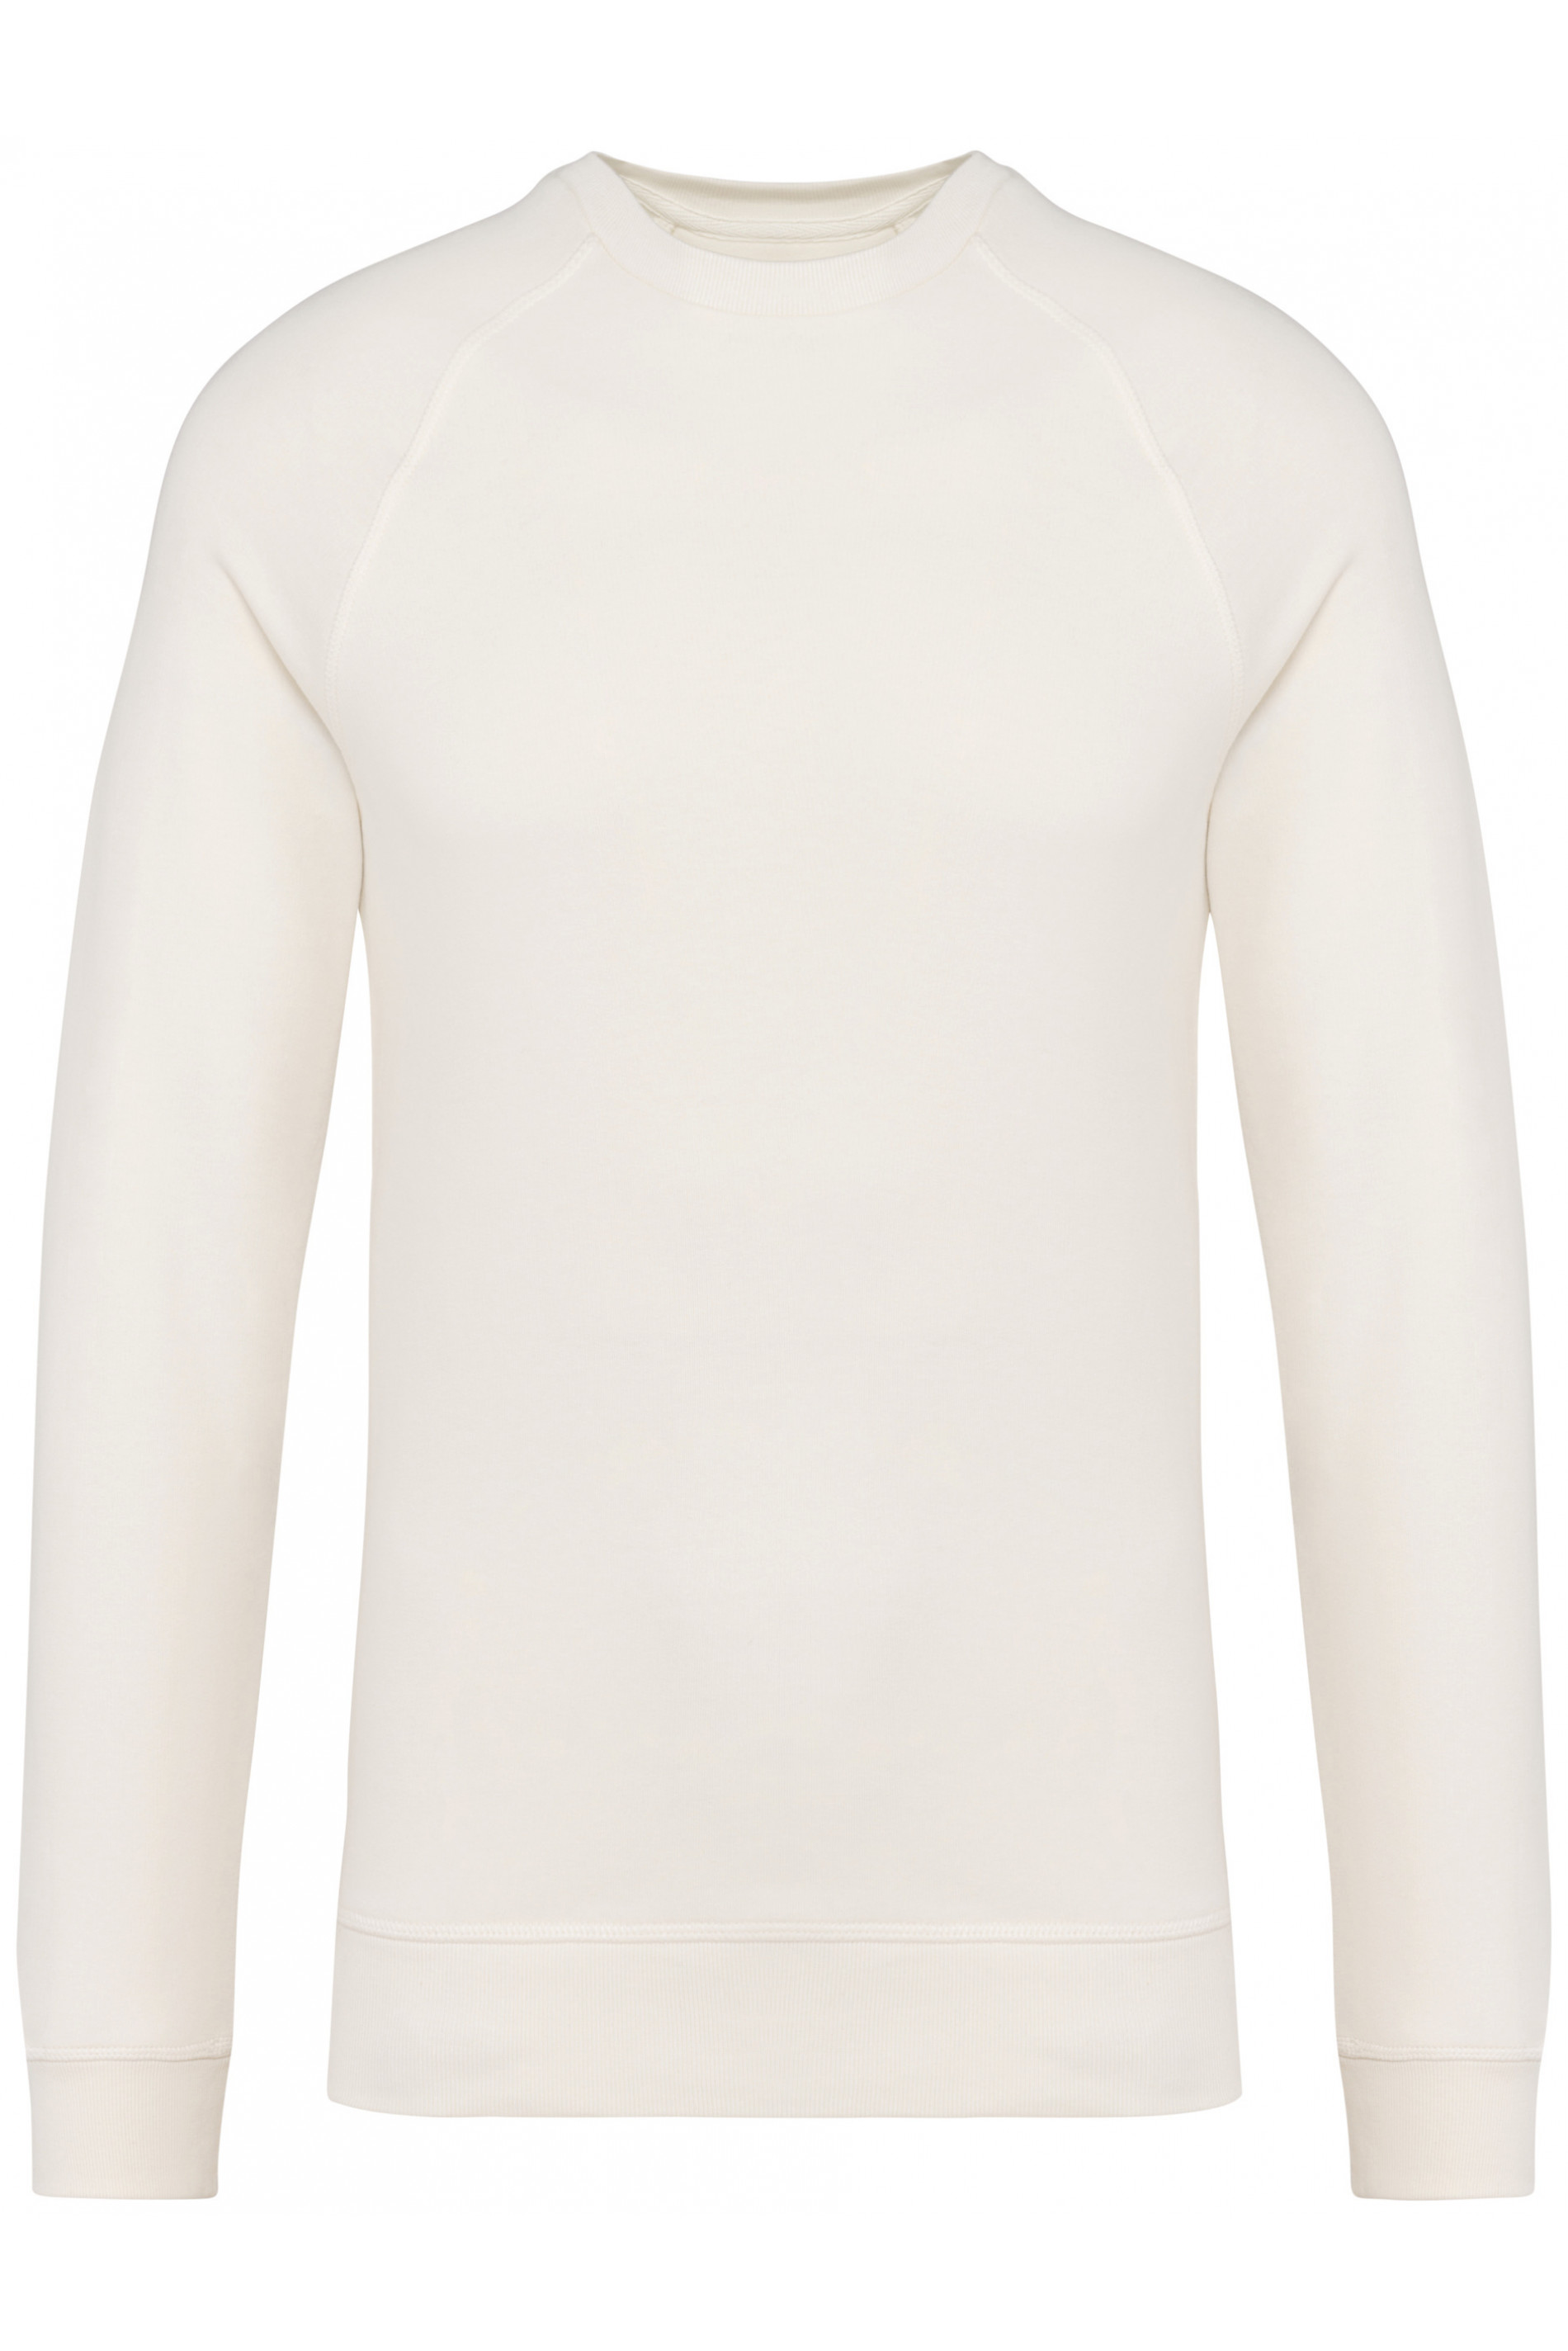 Unisex Bio-Baumwoll-Raglan-Sweatshirt 350 g/m² Native Spirit® Ivory M